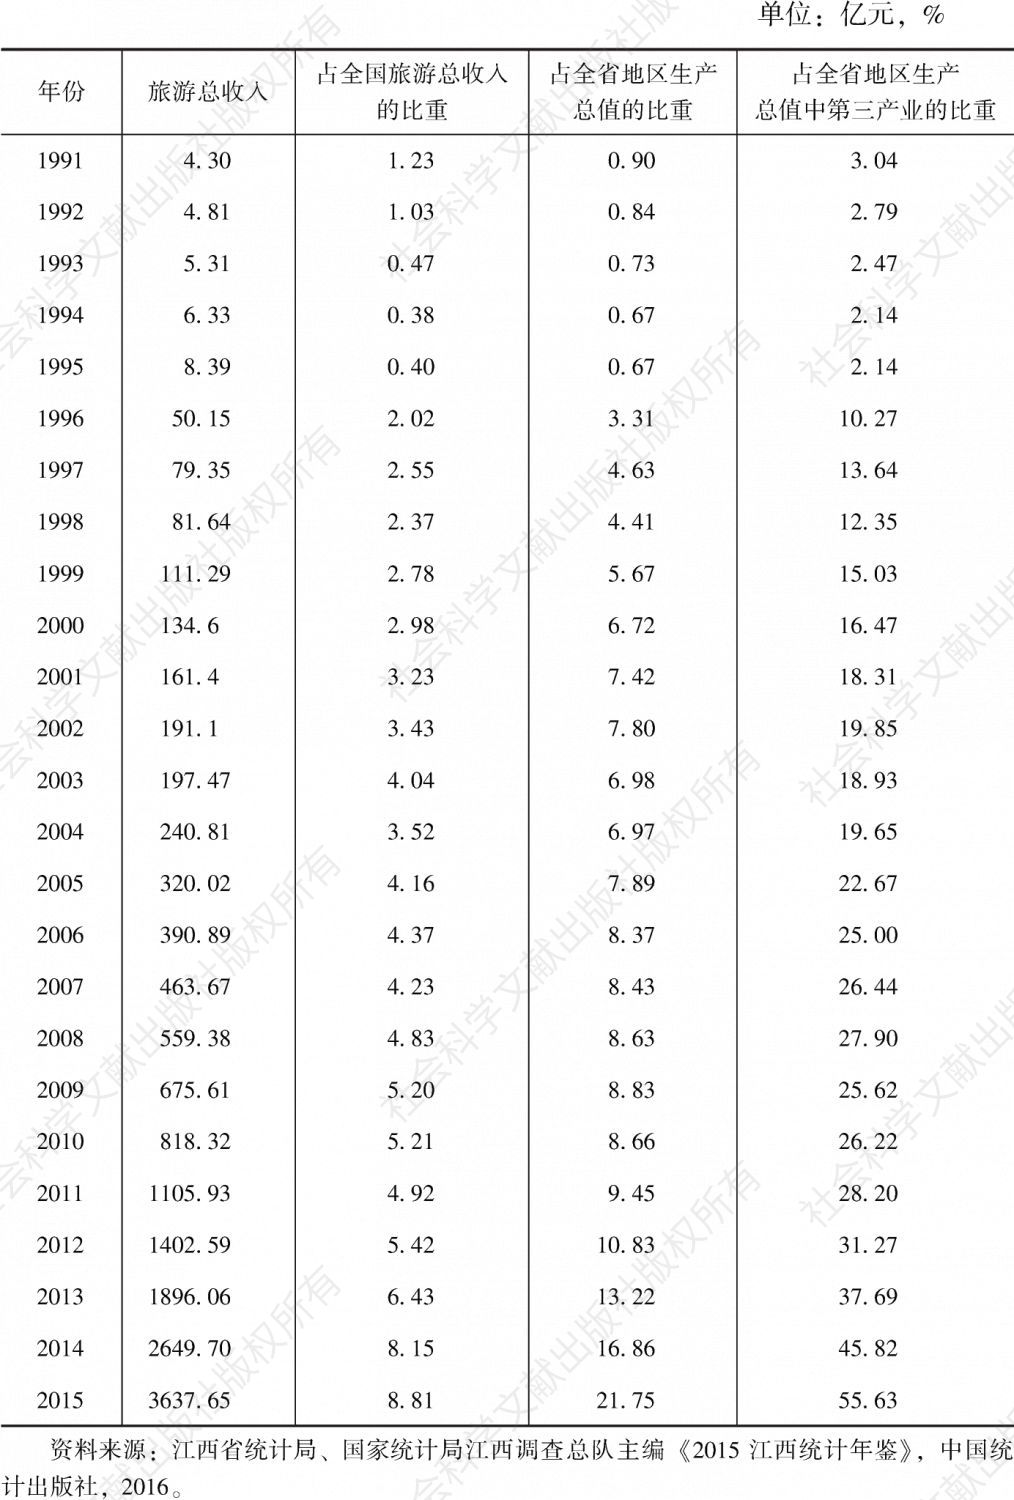 表5-9 1991～2015年江西省旅游产业发展相关数据